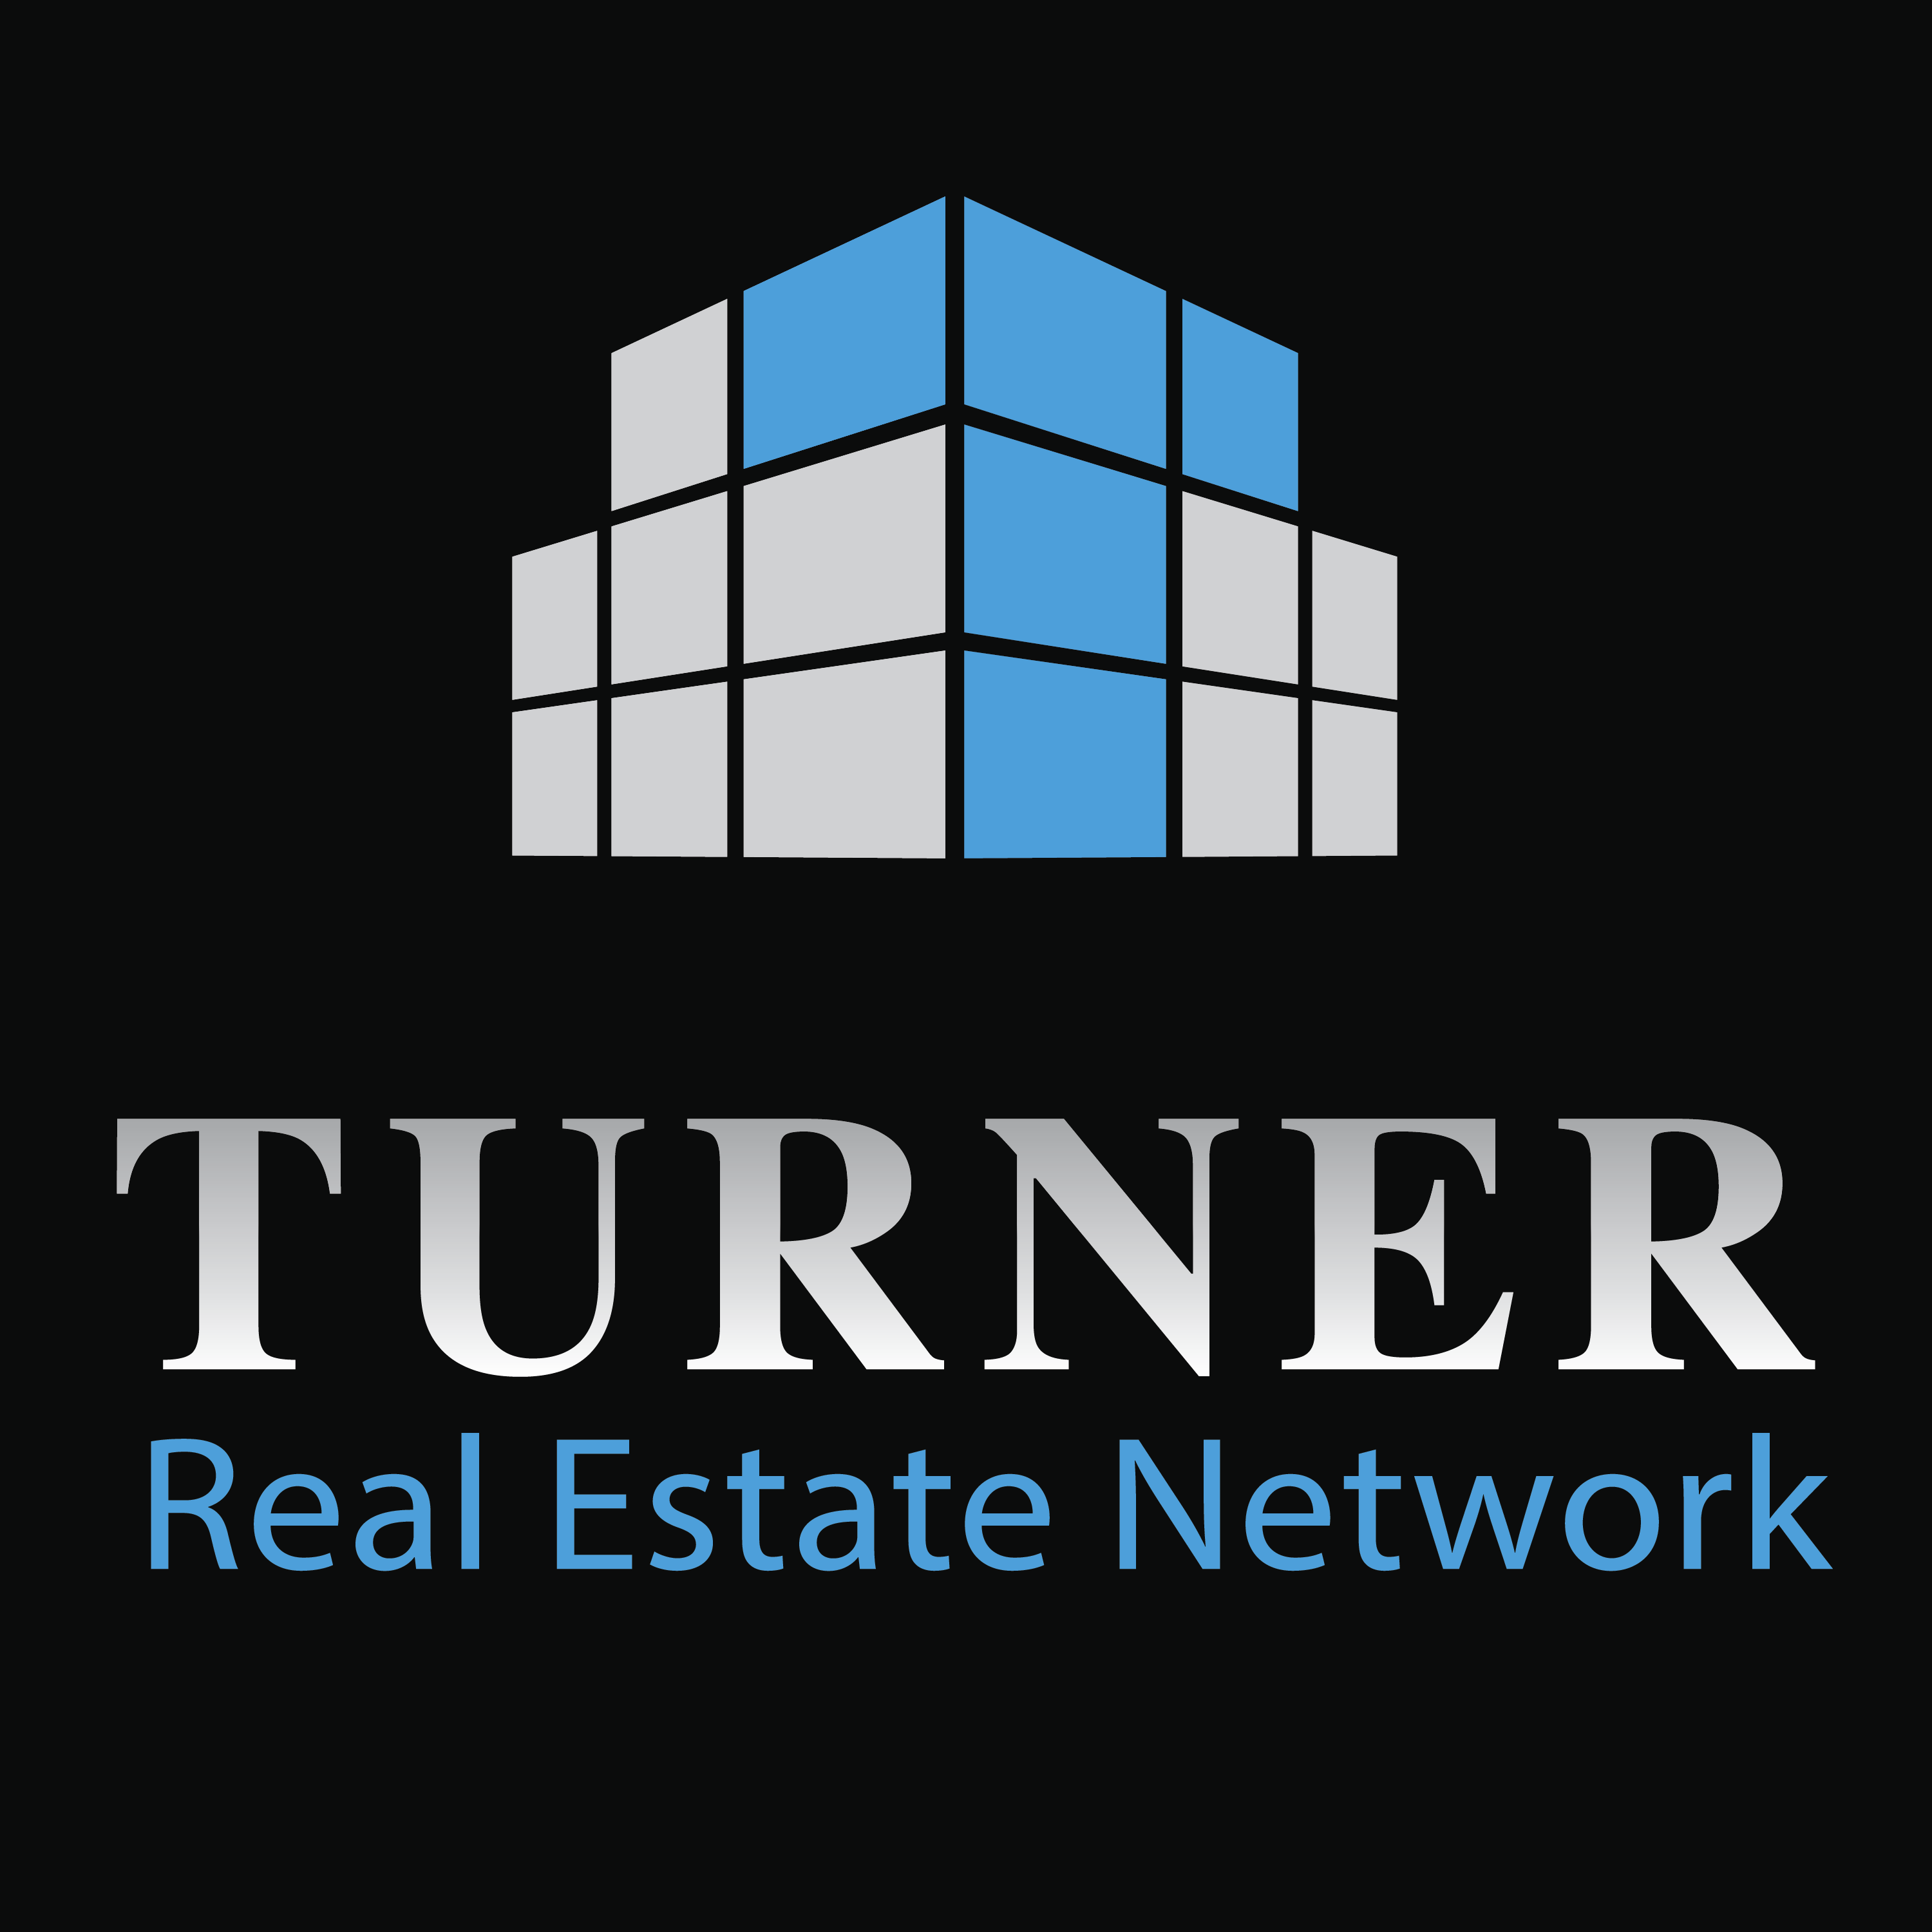 Turner Real Estate Network Sarasota real estate